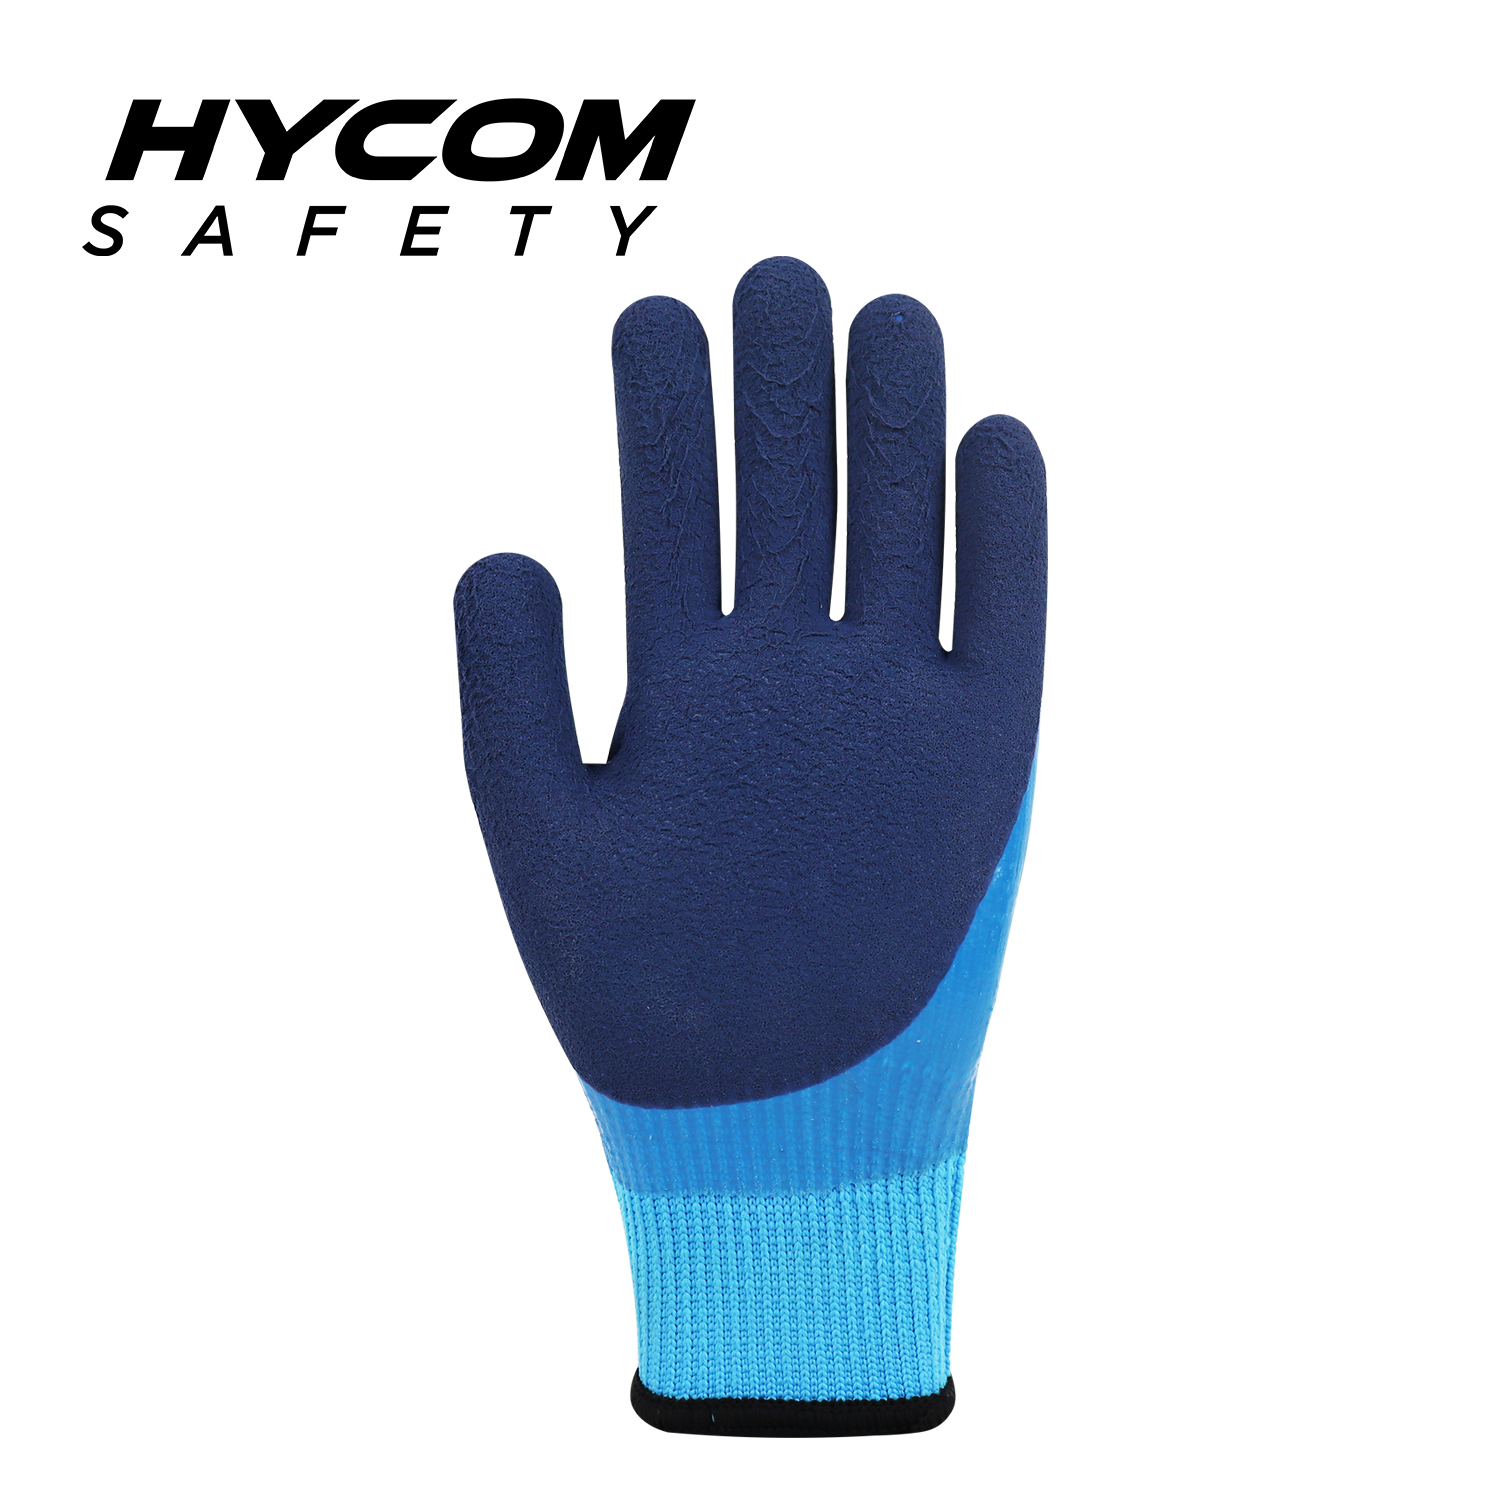 HYCOM 10G atmungsaktiver Acryl-Handschuh mit Schaumlatex-Beschichtung, Fleece-Innenfutter, schnittfester Handschuh